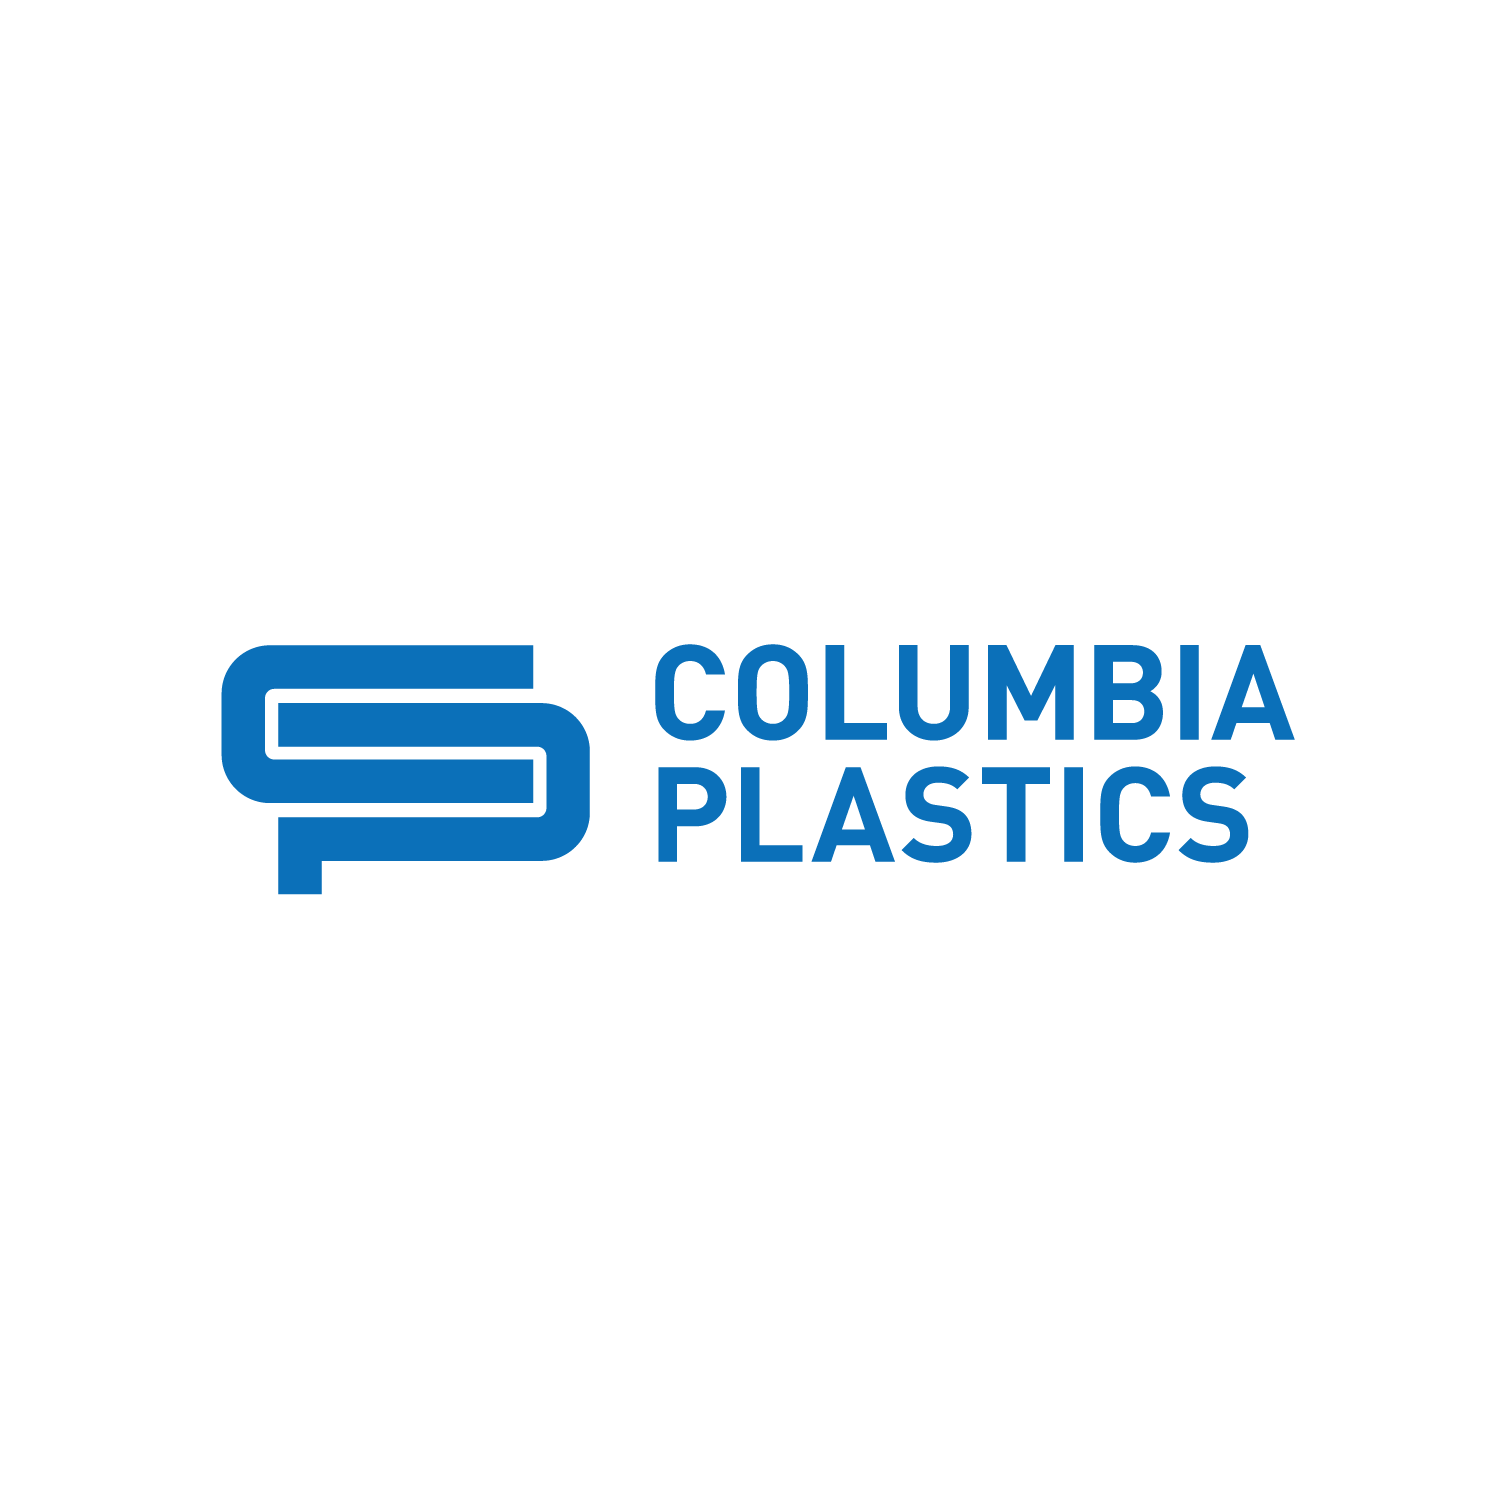 jeneesecreative_columbiaplastics_logo.png